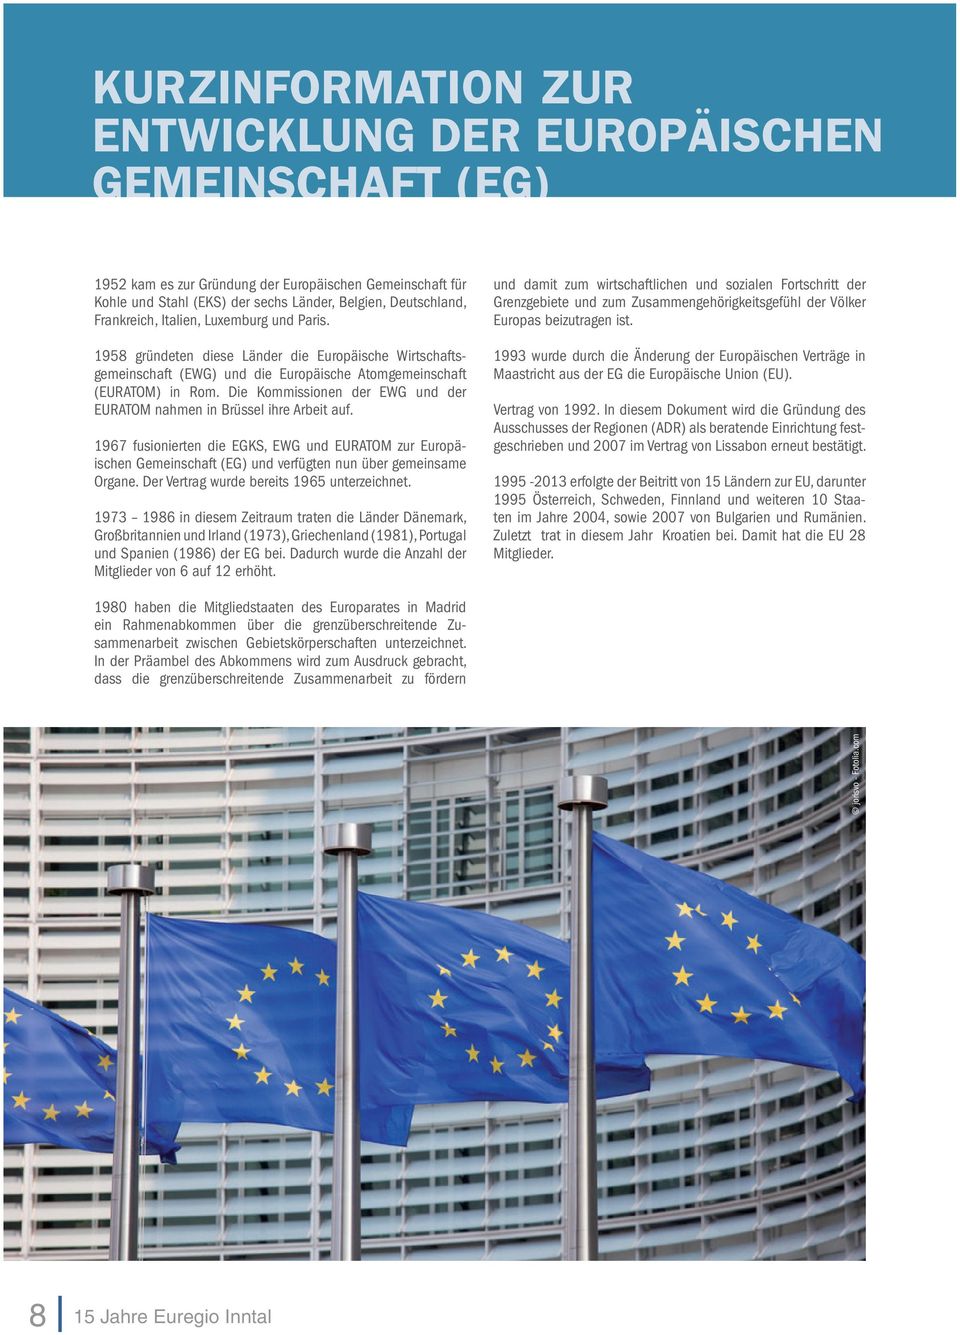 Die Kommissionen der EWG und der EURATOM nahmen in Brüssel ihre Arbeit auf. 1967 fusionierten die EGKS, EWG und EURATOM zur Europäischen Gemeinschaft (EG) und verfügten nun über gemeinsame Organe.